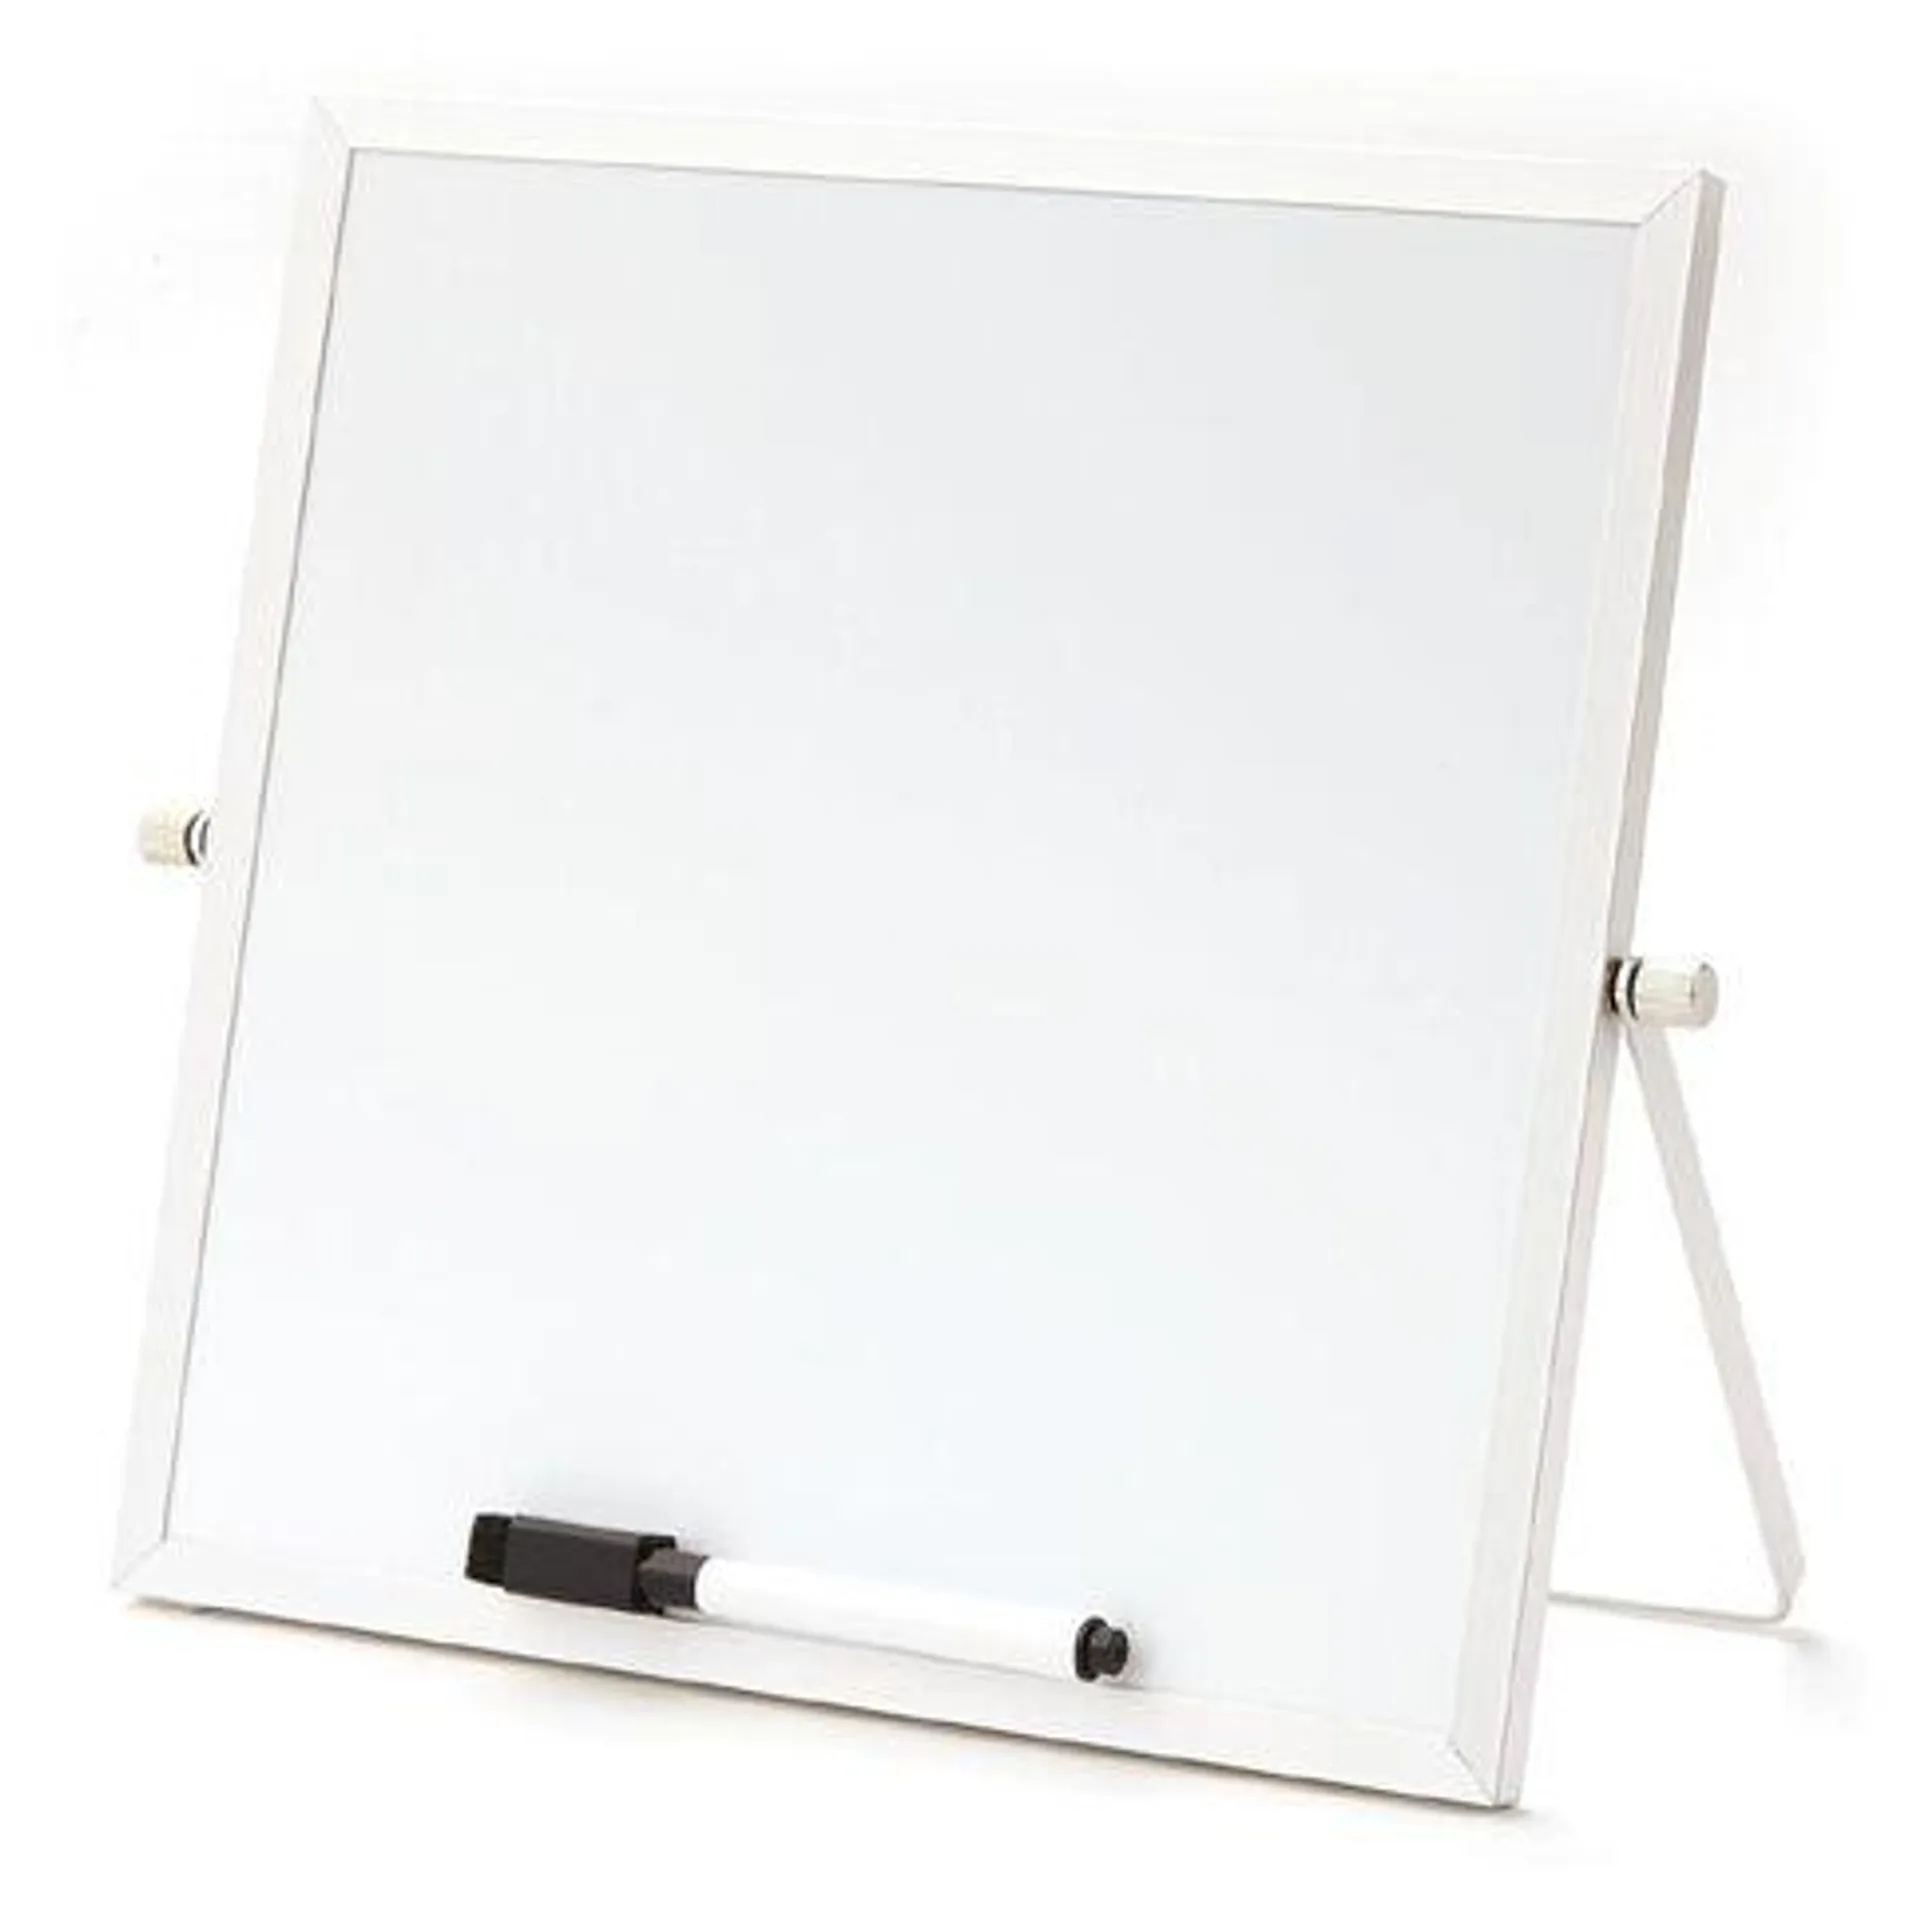 WS Desktop Board 250mm x 250mm White